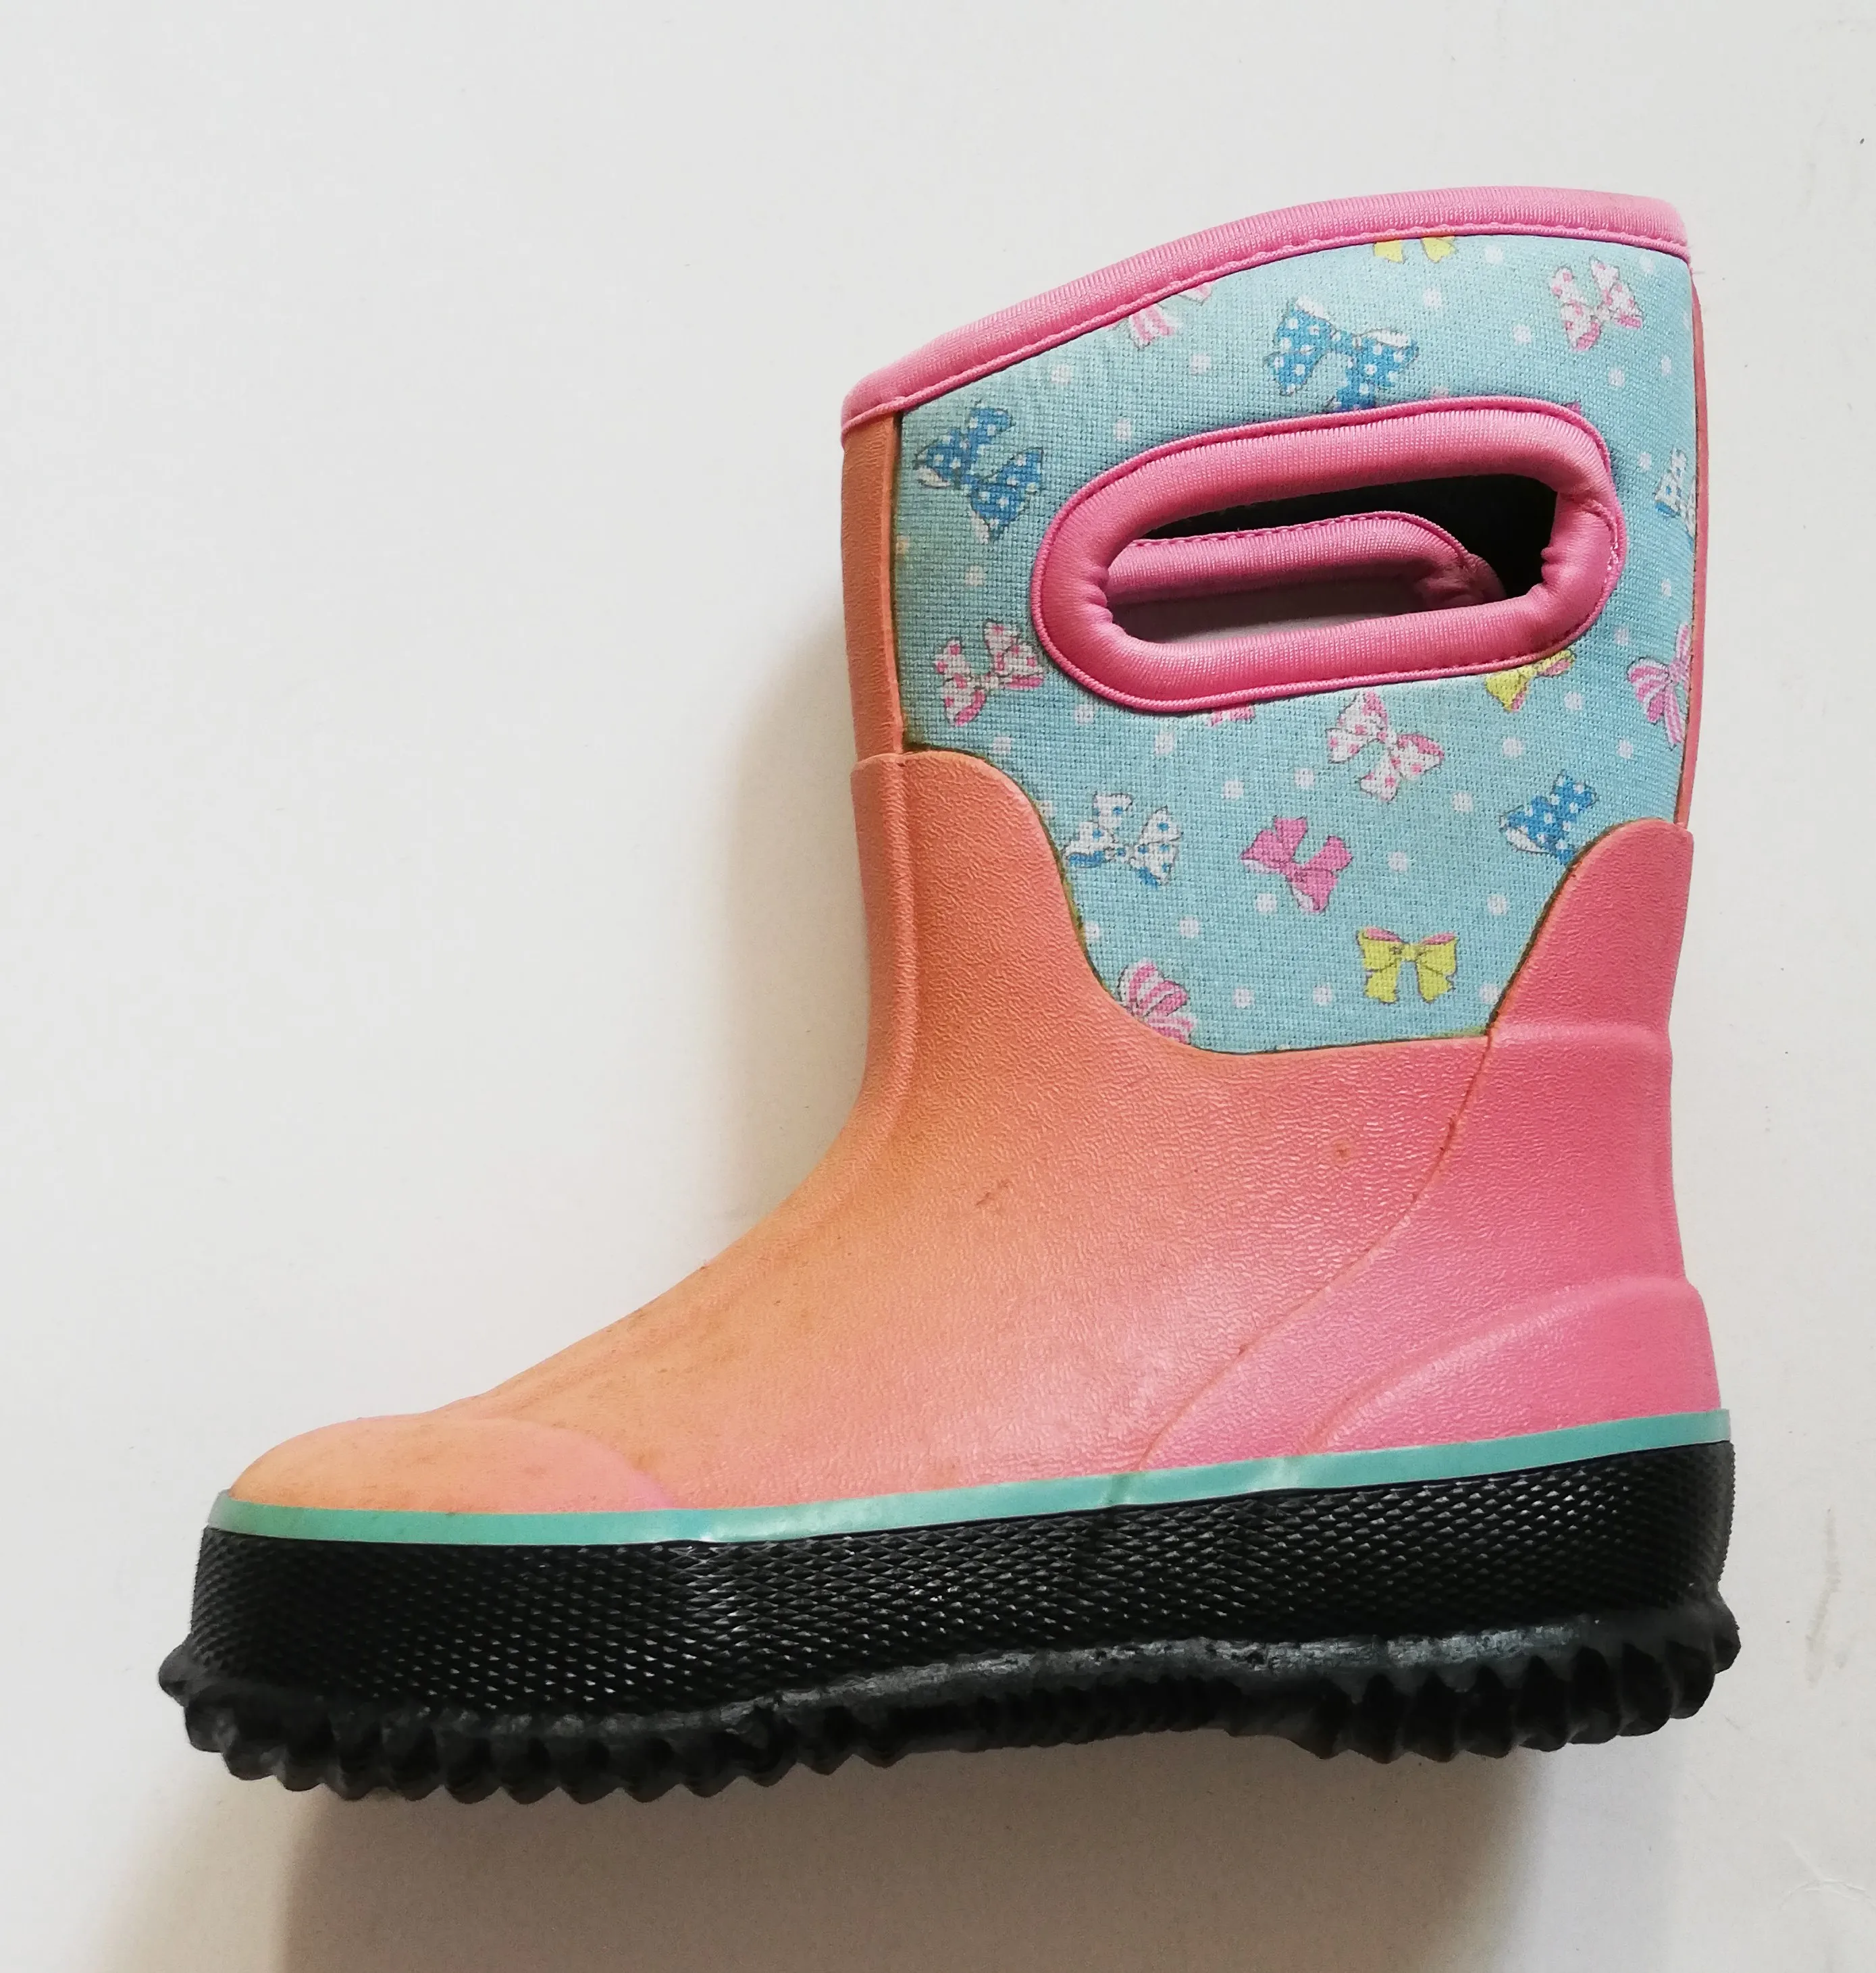 Best Selling Outdoor Sports Neoprene Rubber Rain Boot For Children ...